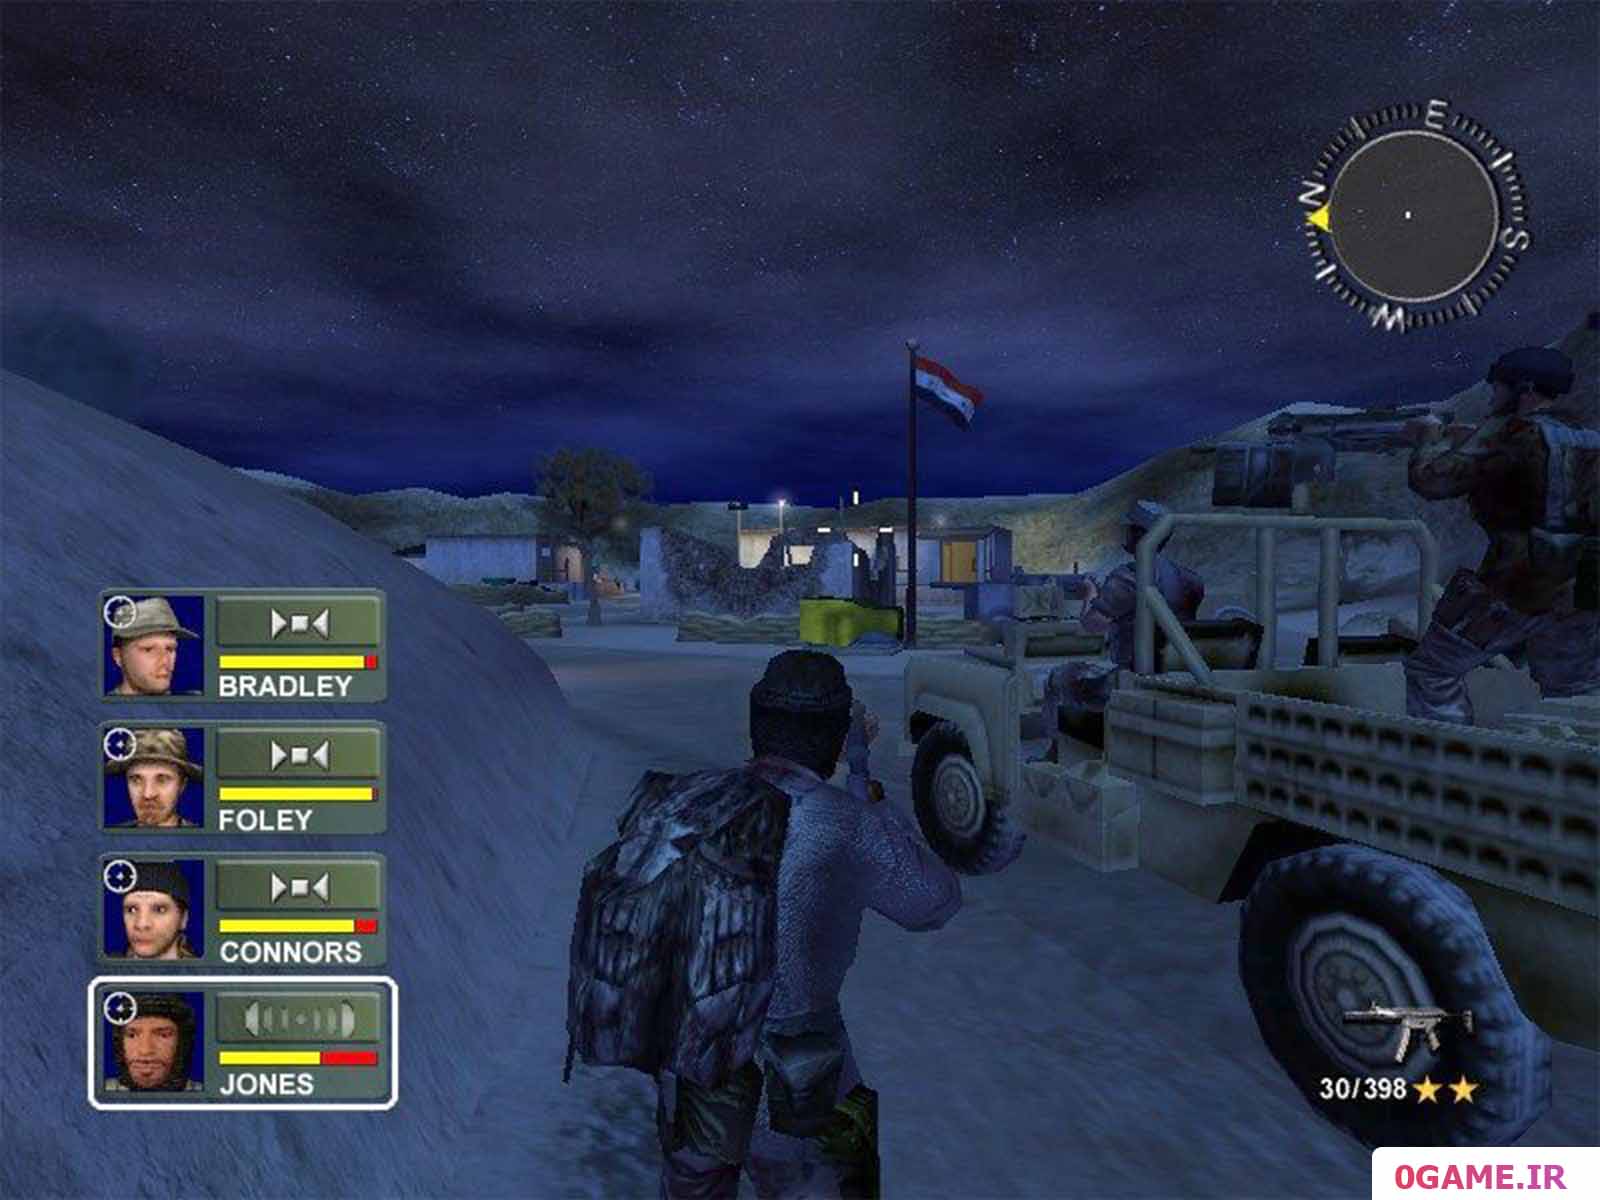 دانلود بازی طوفان صحرا 2 (Conflict: Desert Storm II) برای کامپیوتر